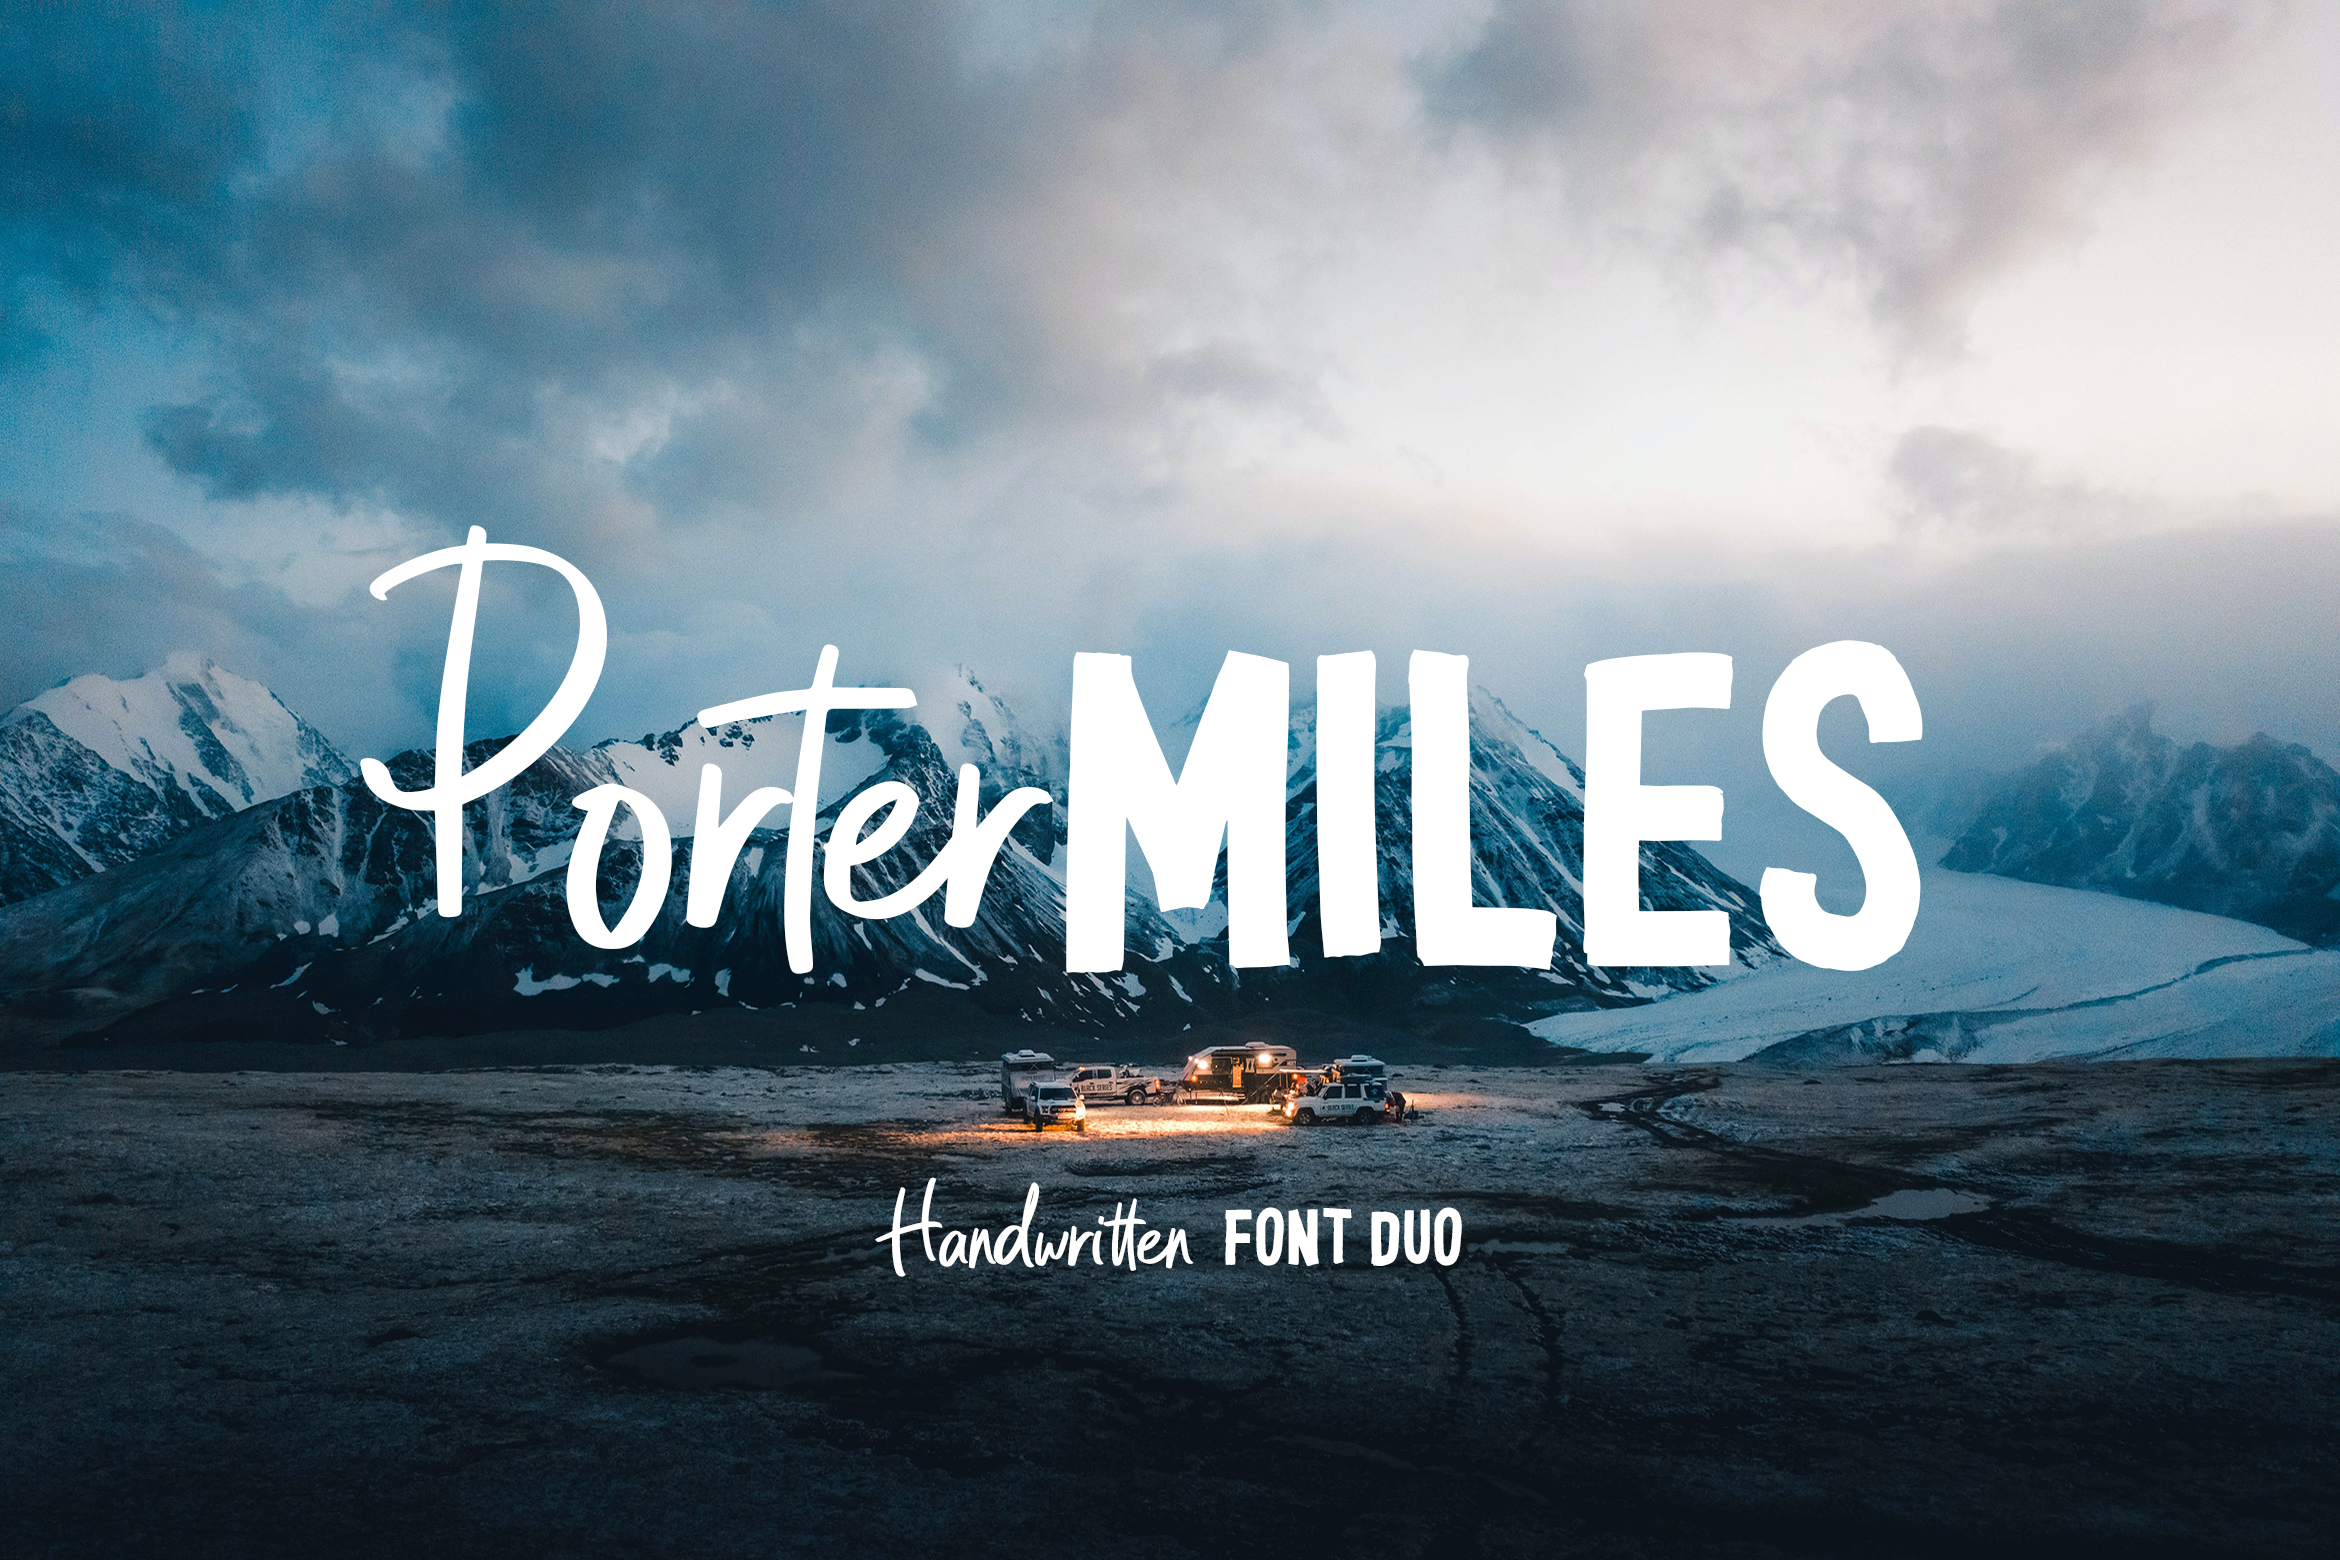 Porter Miles